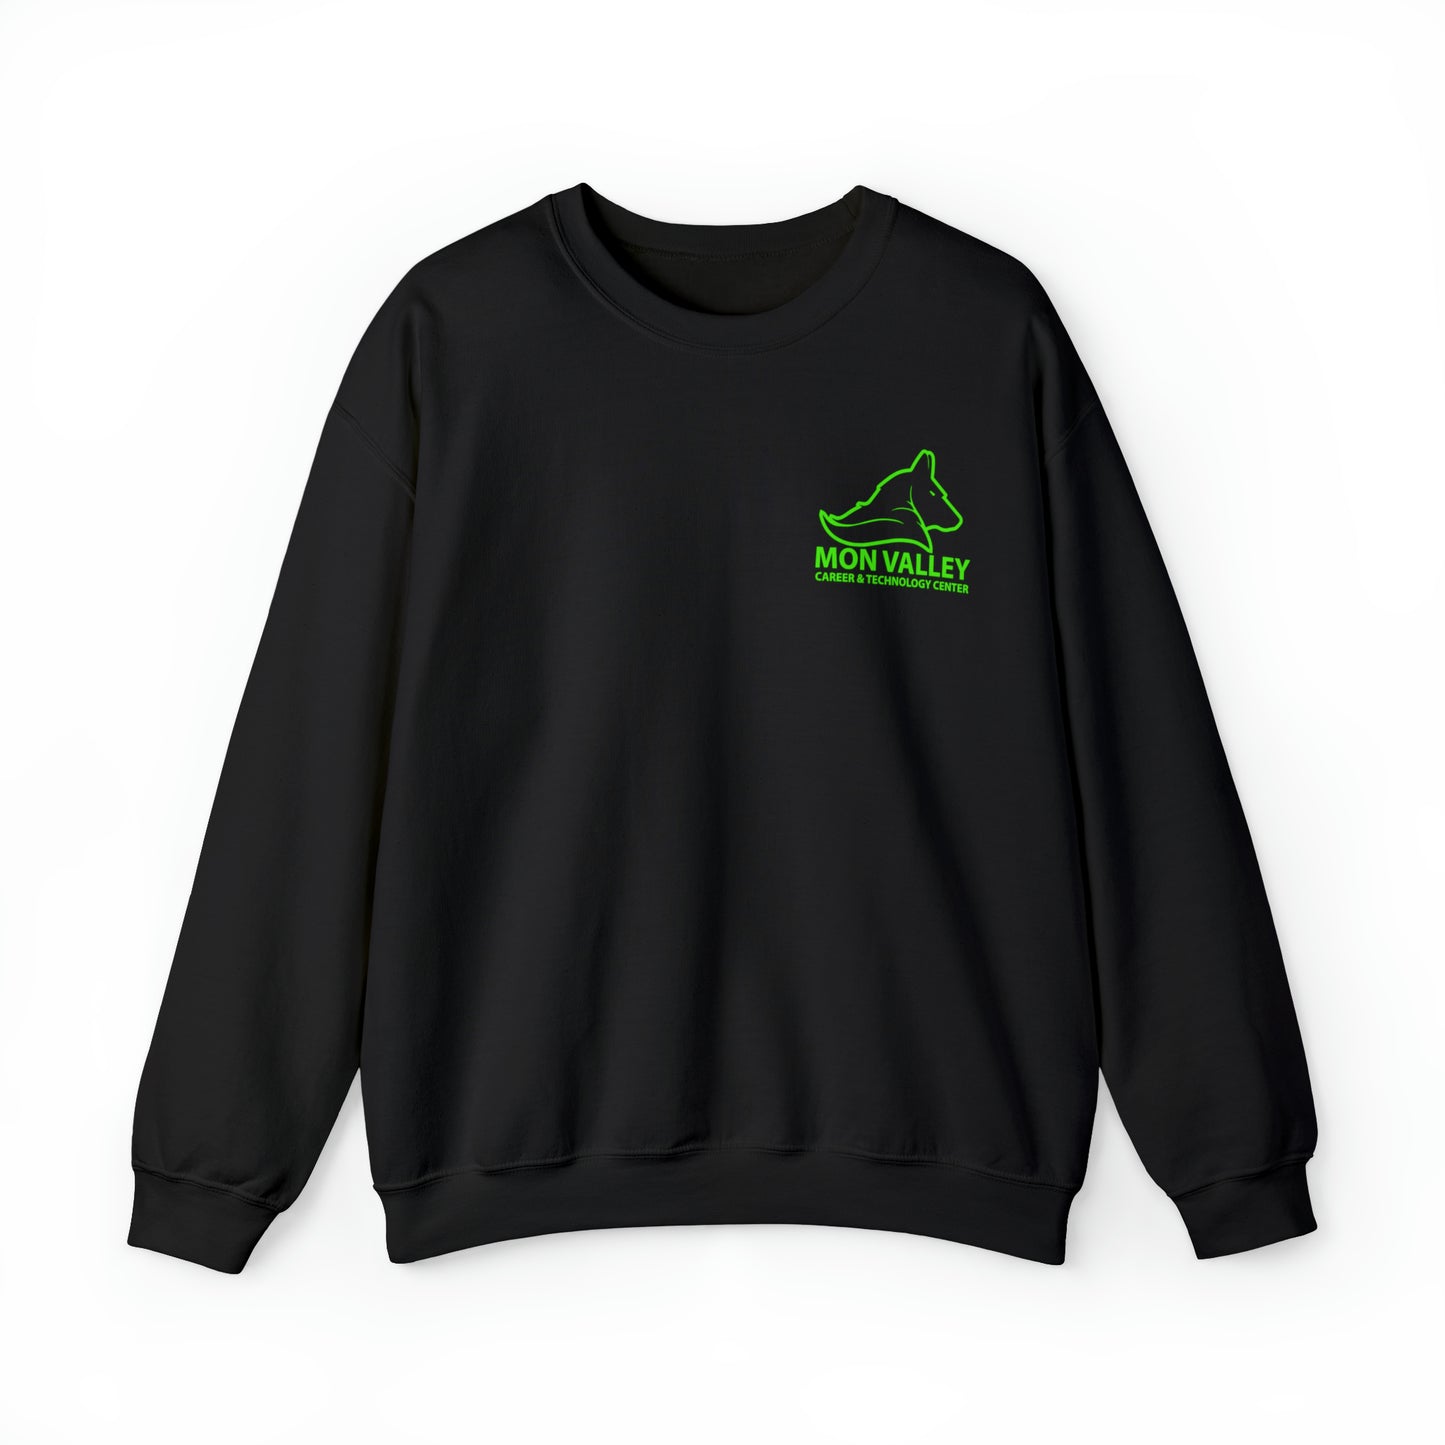 MVCTC- Electric Sweatshirt